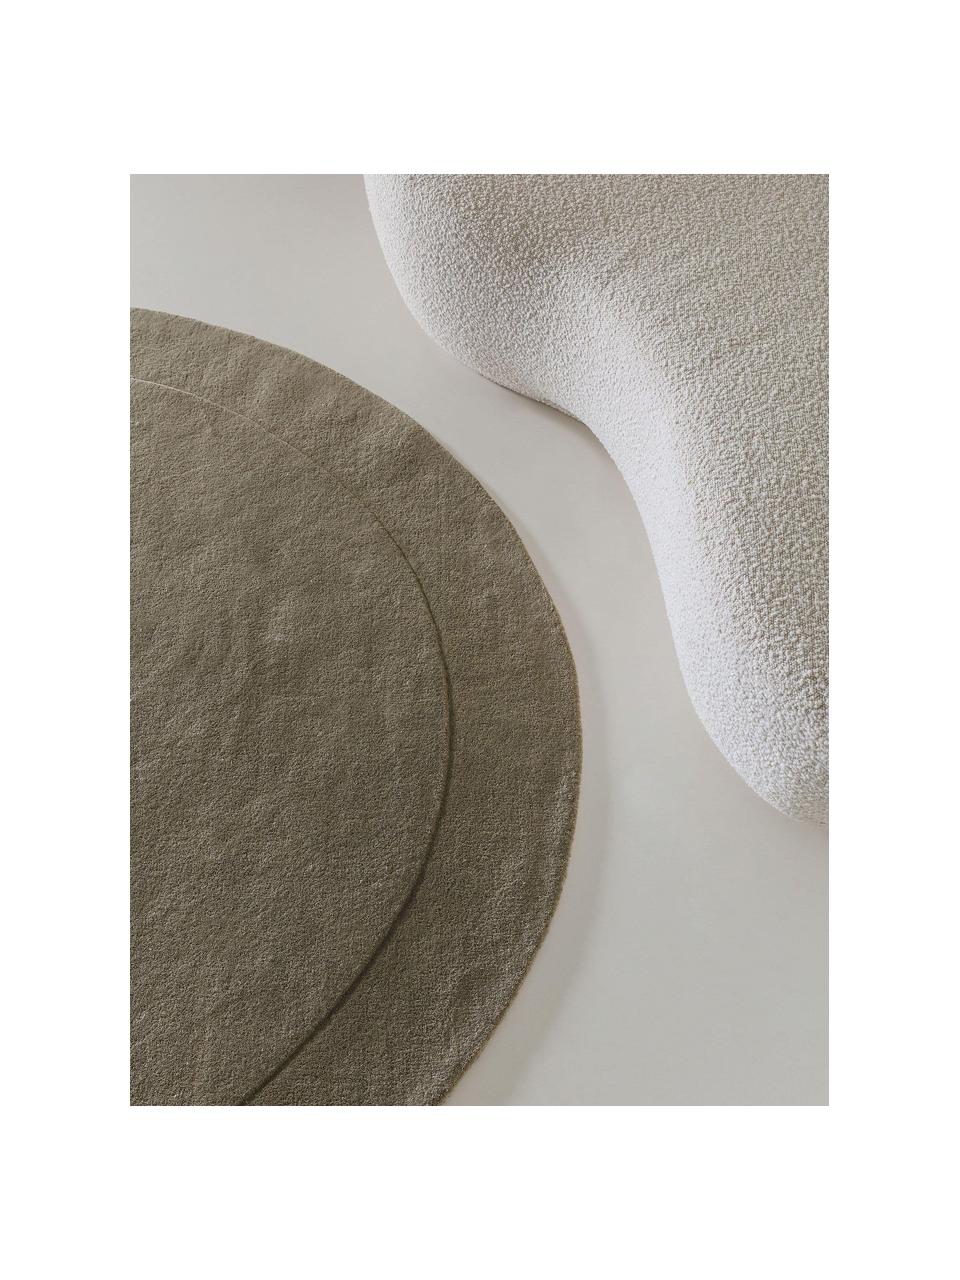 Ručně tkaný vlněný koberec v organickém tvaru Shape, 100 % vlna

V prvních týdnech používání vlněných koberců se může objevit charakteristický jev uvolňování vláken, který po několika týdnech používání ustane., Olivově zelená, Ø 200 cm (velikost L)